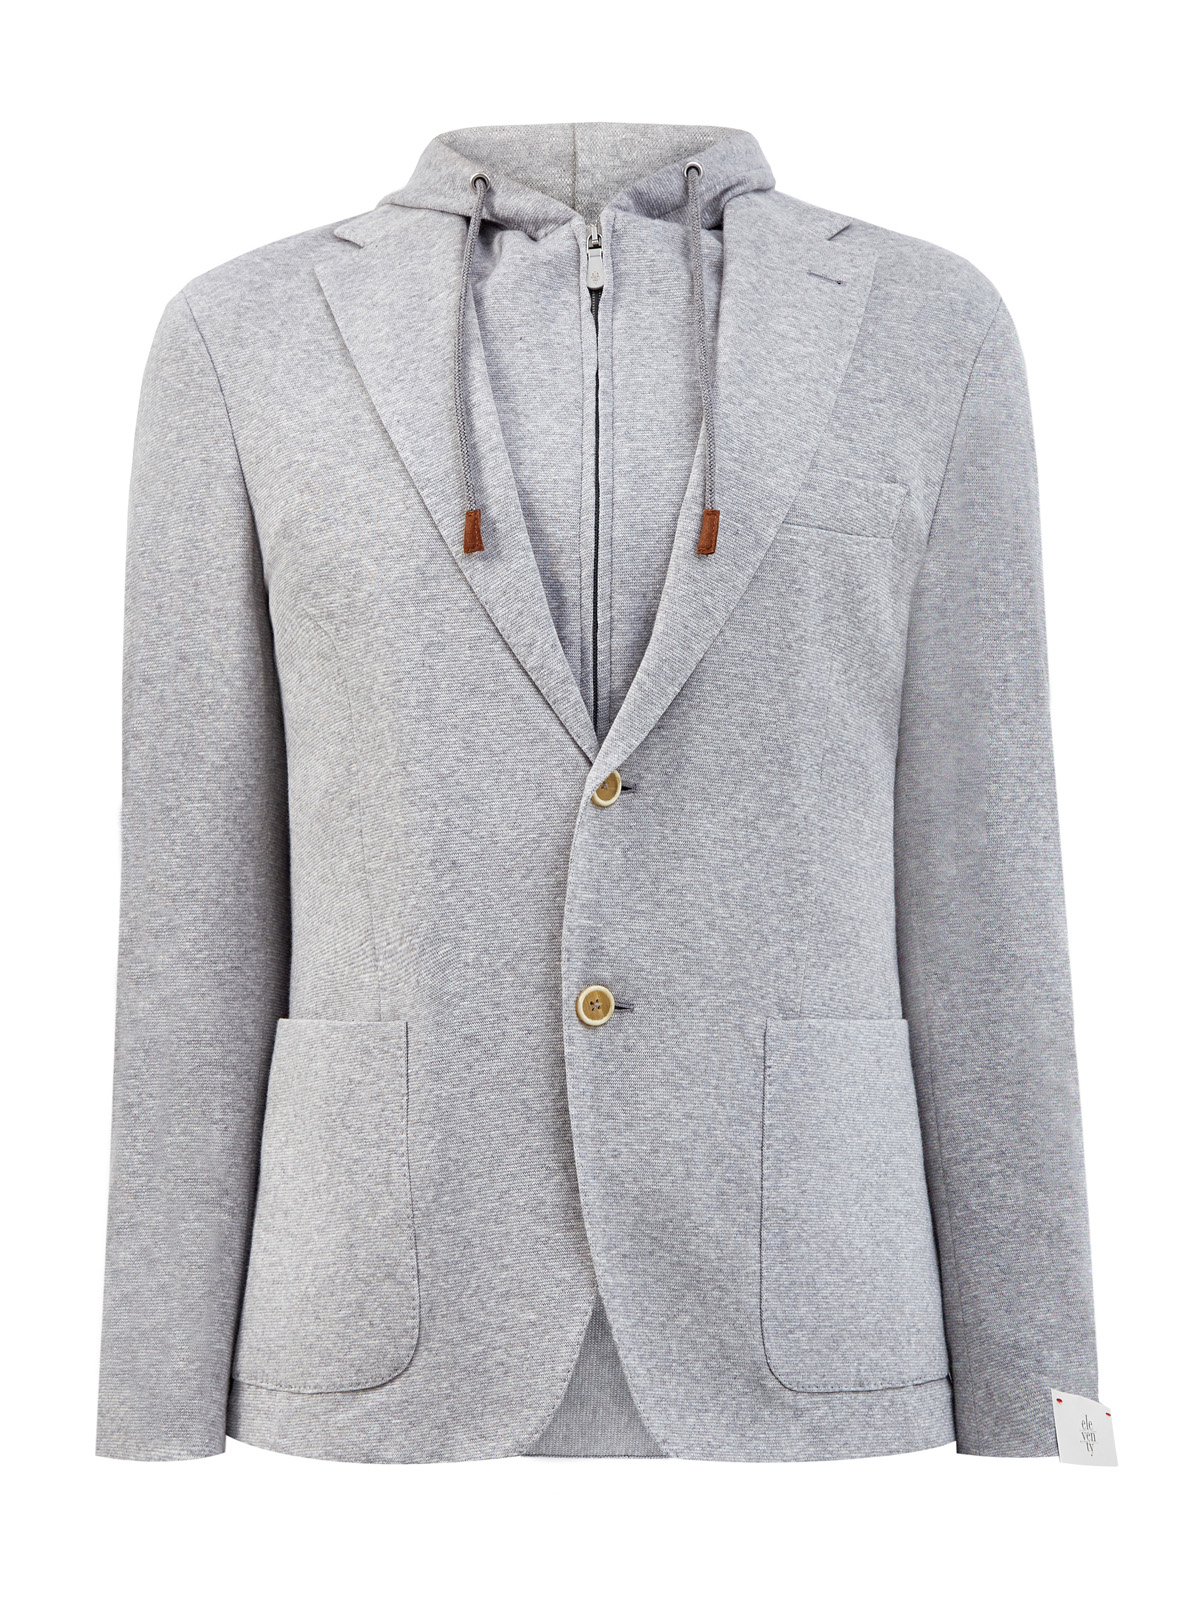 Пиджак-трансформер в спортивном стиле с капюшоном ELEVENTY, цвет серый, размер 52